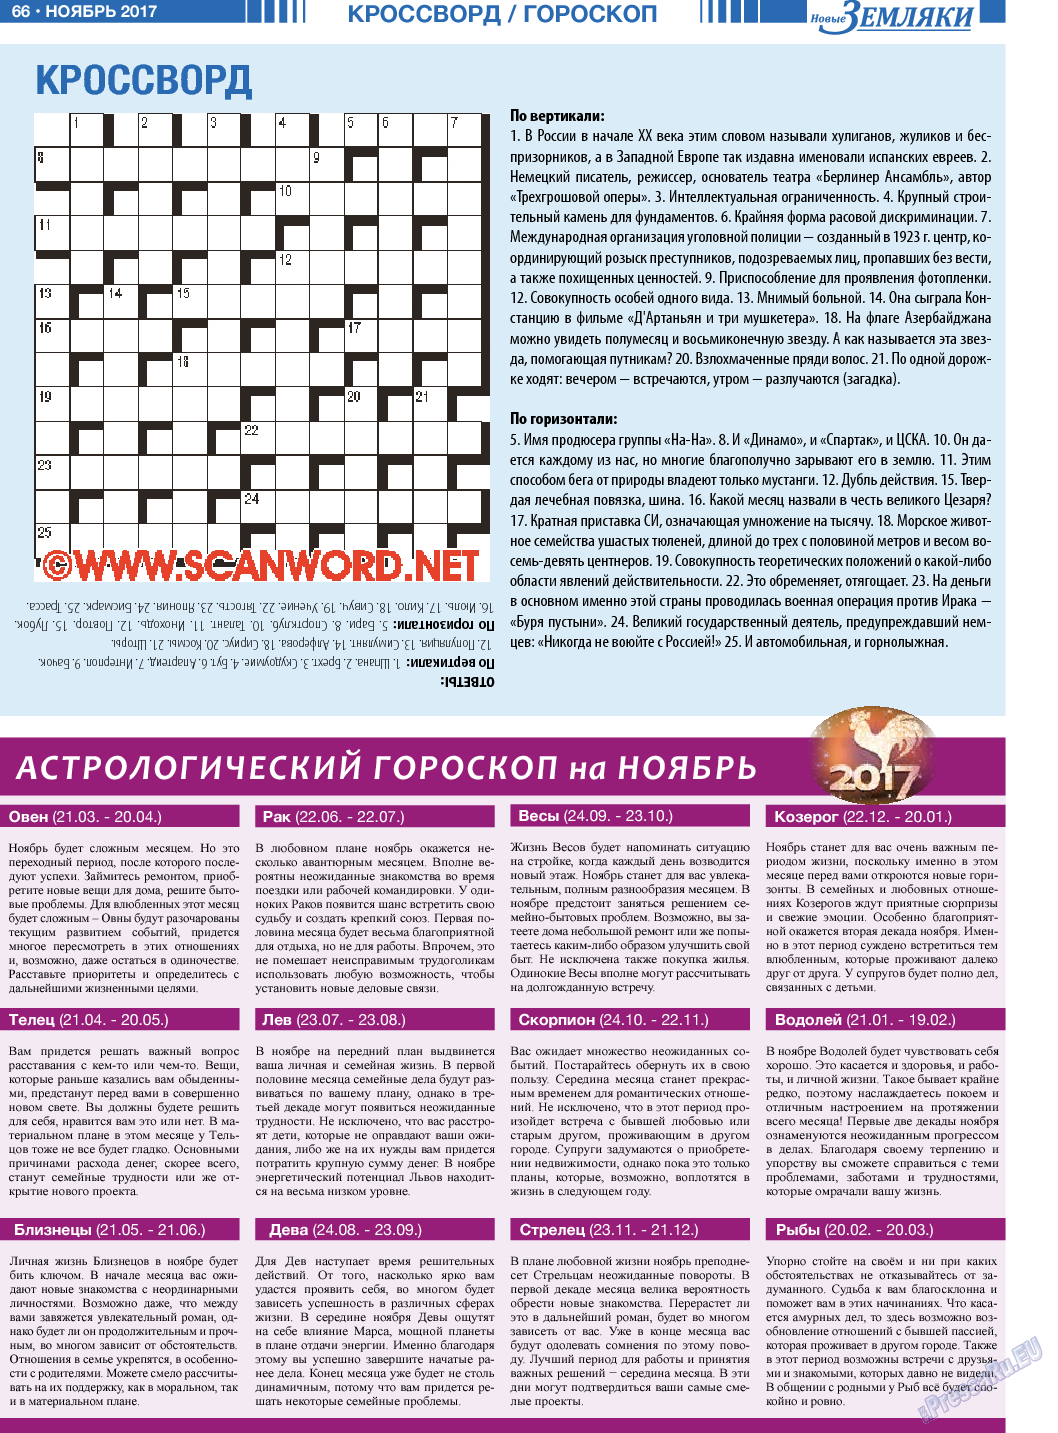 Новые Земляки, газета. 2017 №11 стр.66